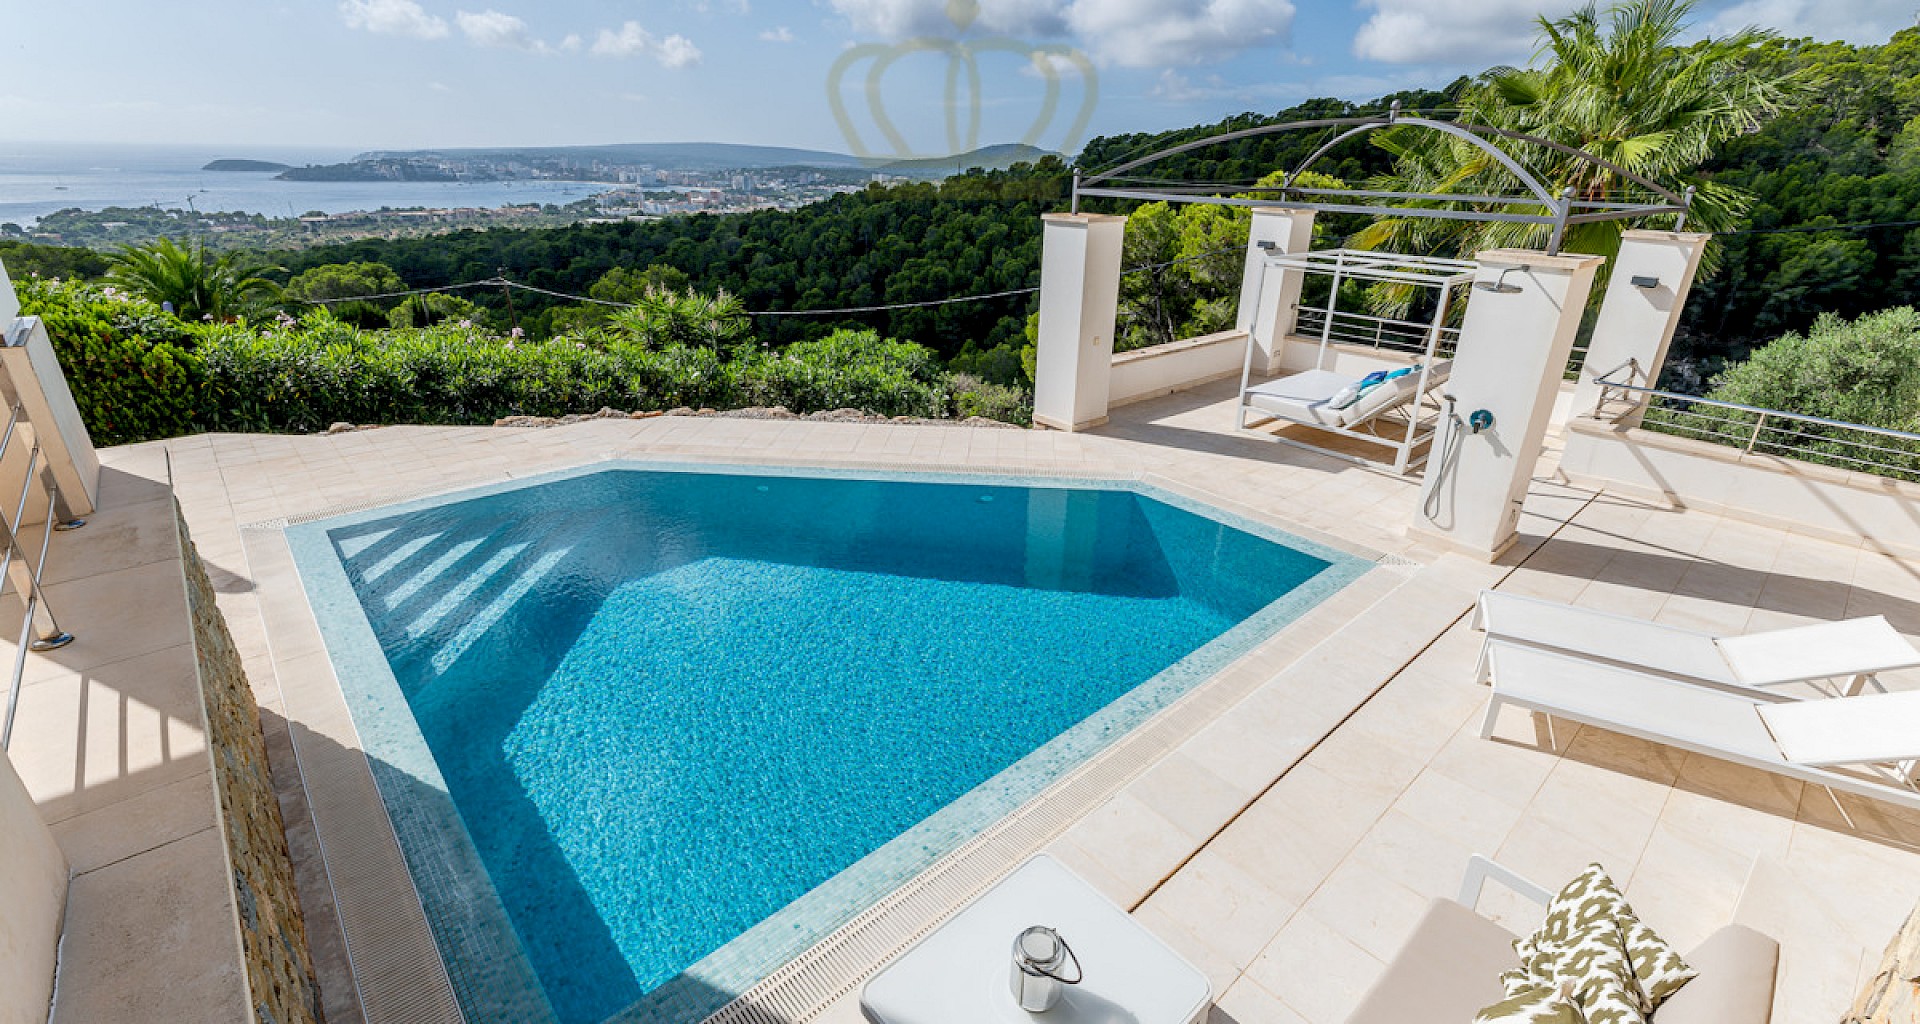 KROHN & LUEDEMANN Villa con fantásticas vistas al mar en Costa d'en Blanes Mallorca Villa Costa den Blanes